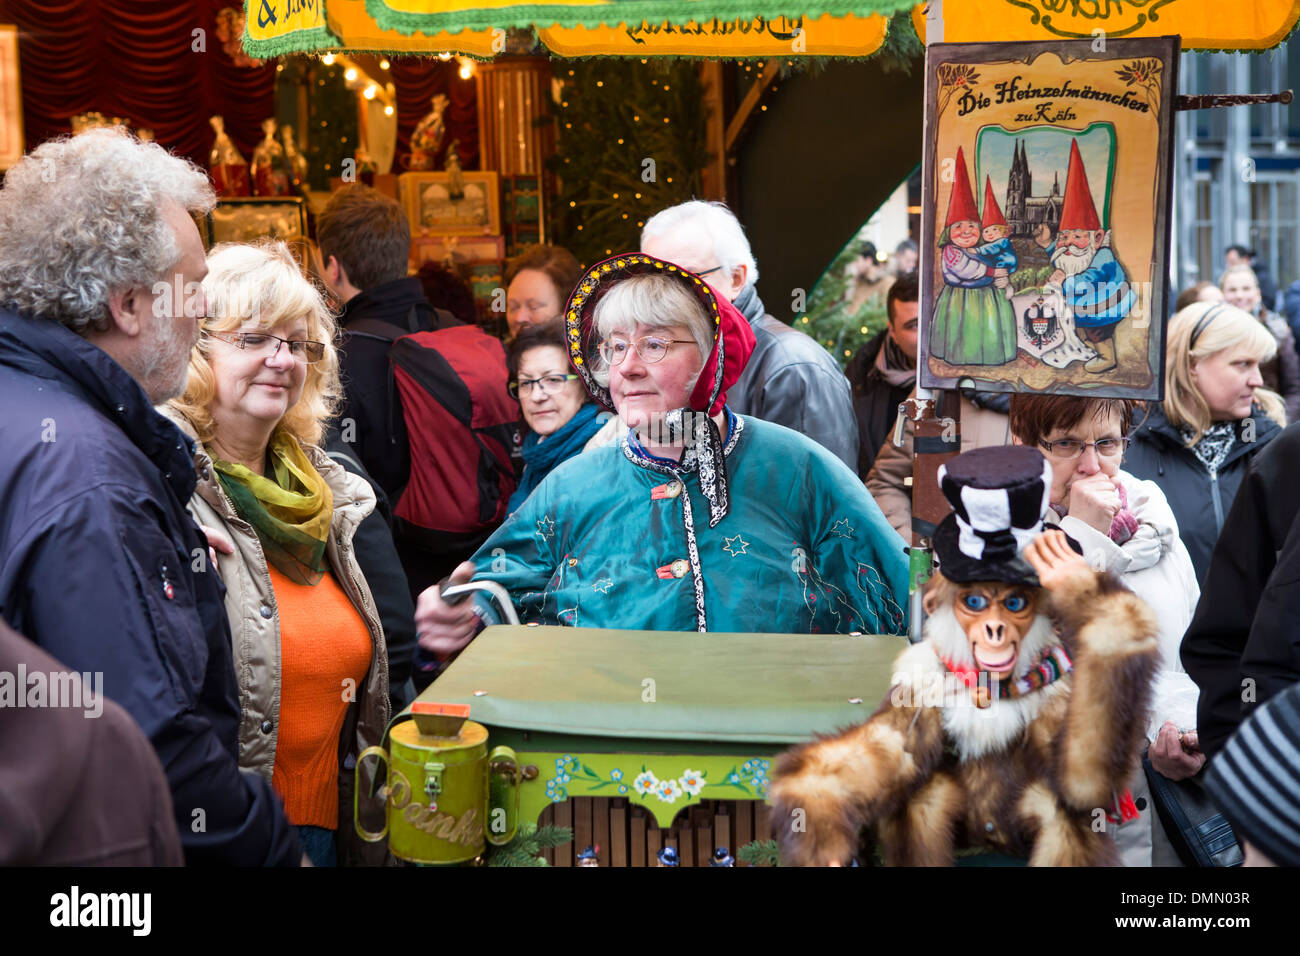 Mercatino di Natale di Colonia, donna con costume tradizionale e organetto all'(Altstadt o la parte vecchia della città) Foto Stock